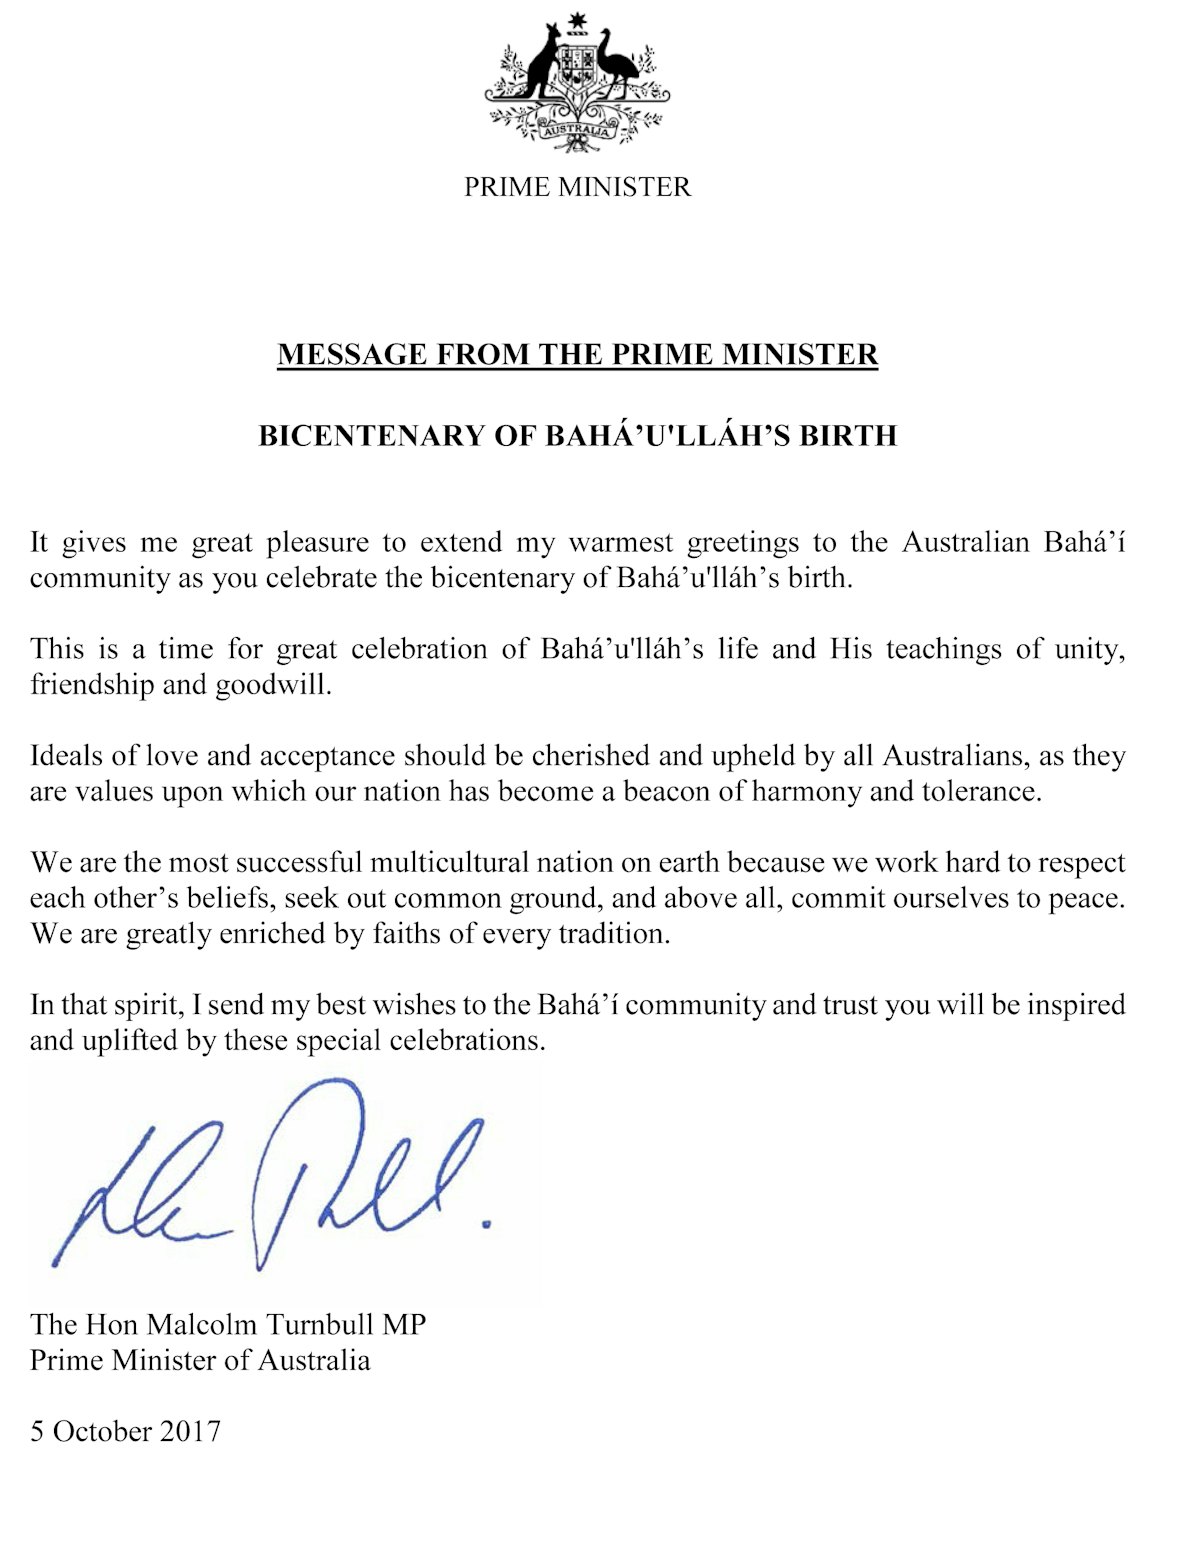 «Ha llegado el momento para una gran celebración de la vida de Bahá’u’lláh y Sus enseñanzas de unidad, amistad y buena voluntad», escribió el primer ministro australiano, Turnbull, a la comunidad bahá’í.